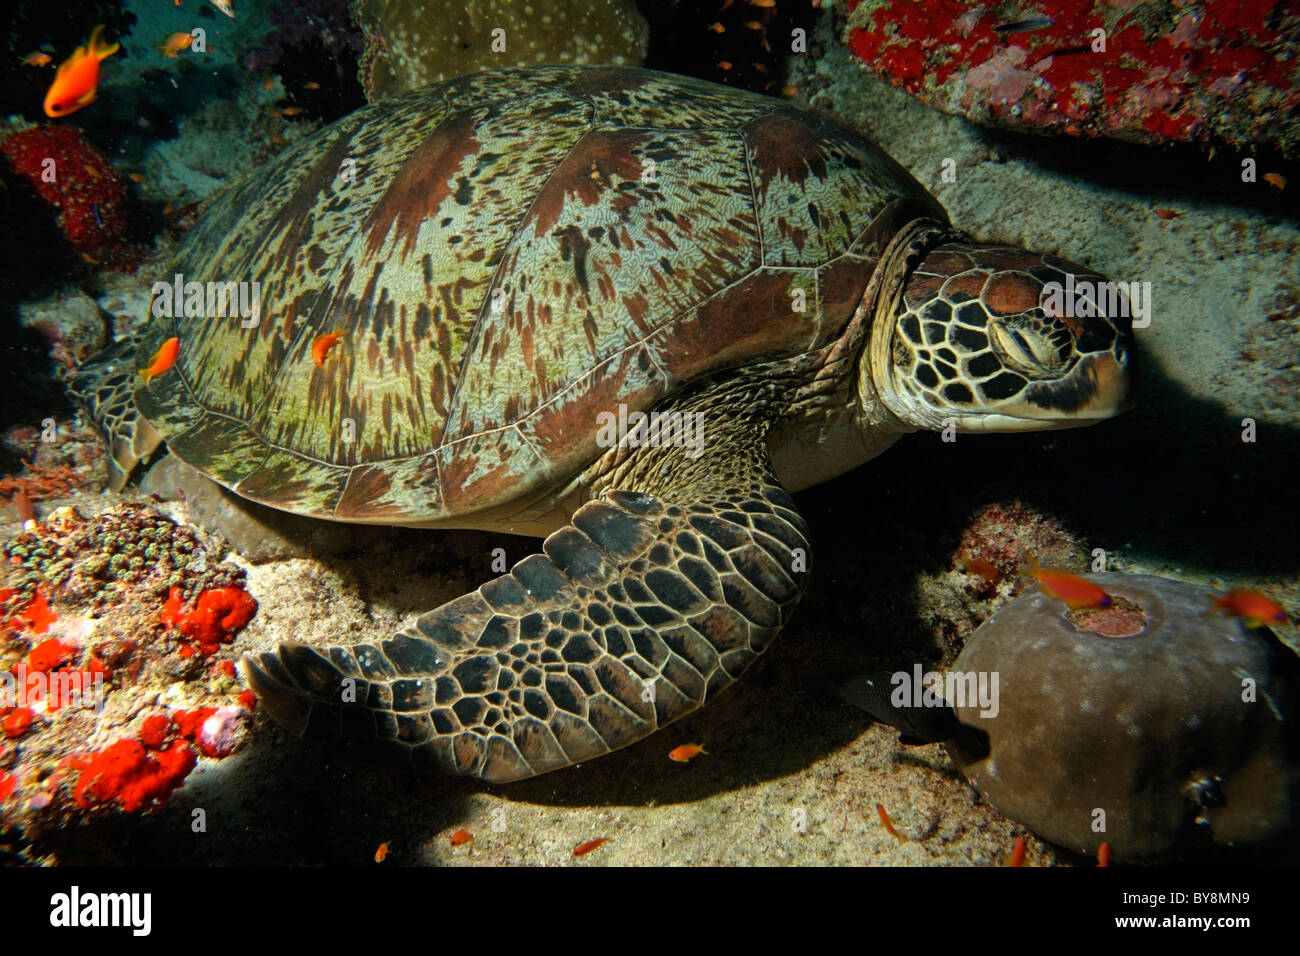 La tortuga verde (Chelonia mydas - natación en un lecho marino Foto de stock